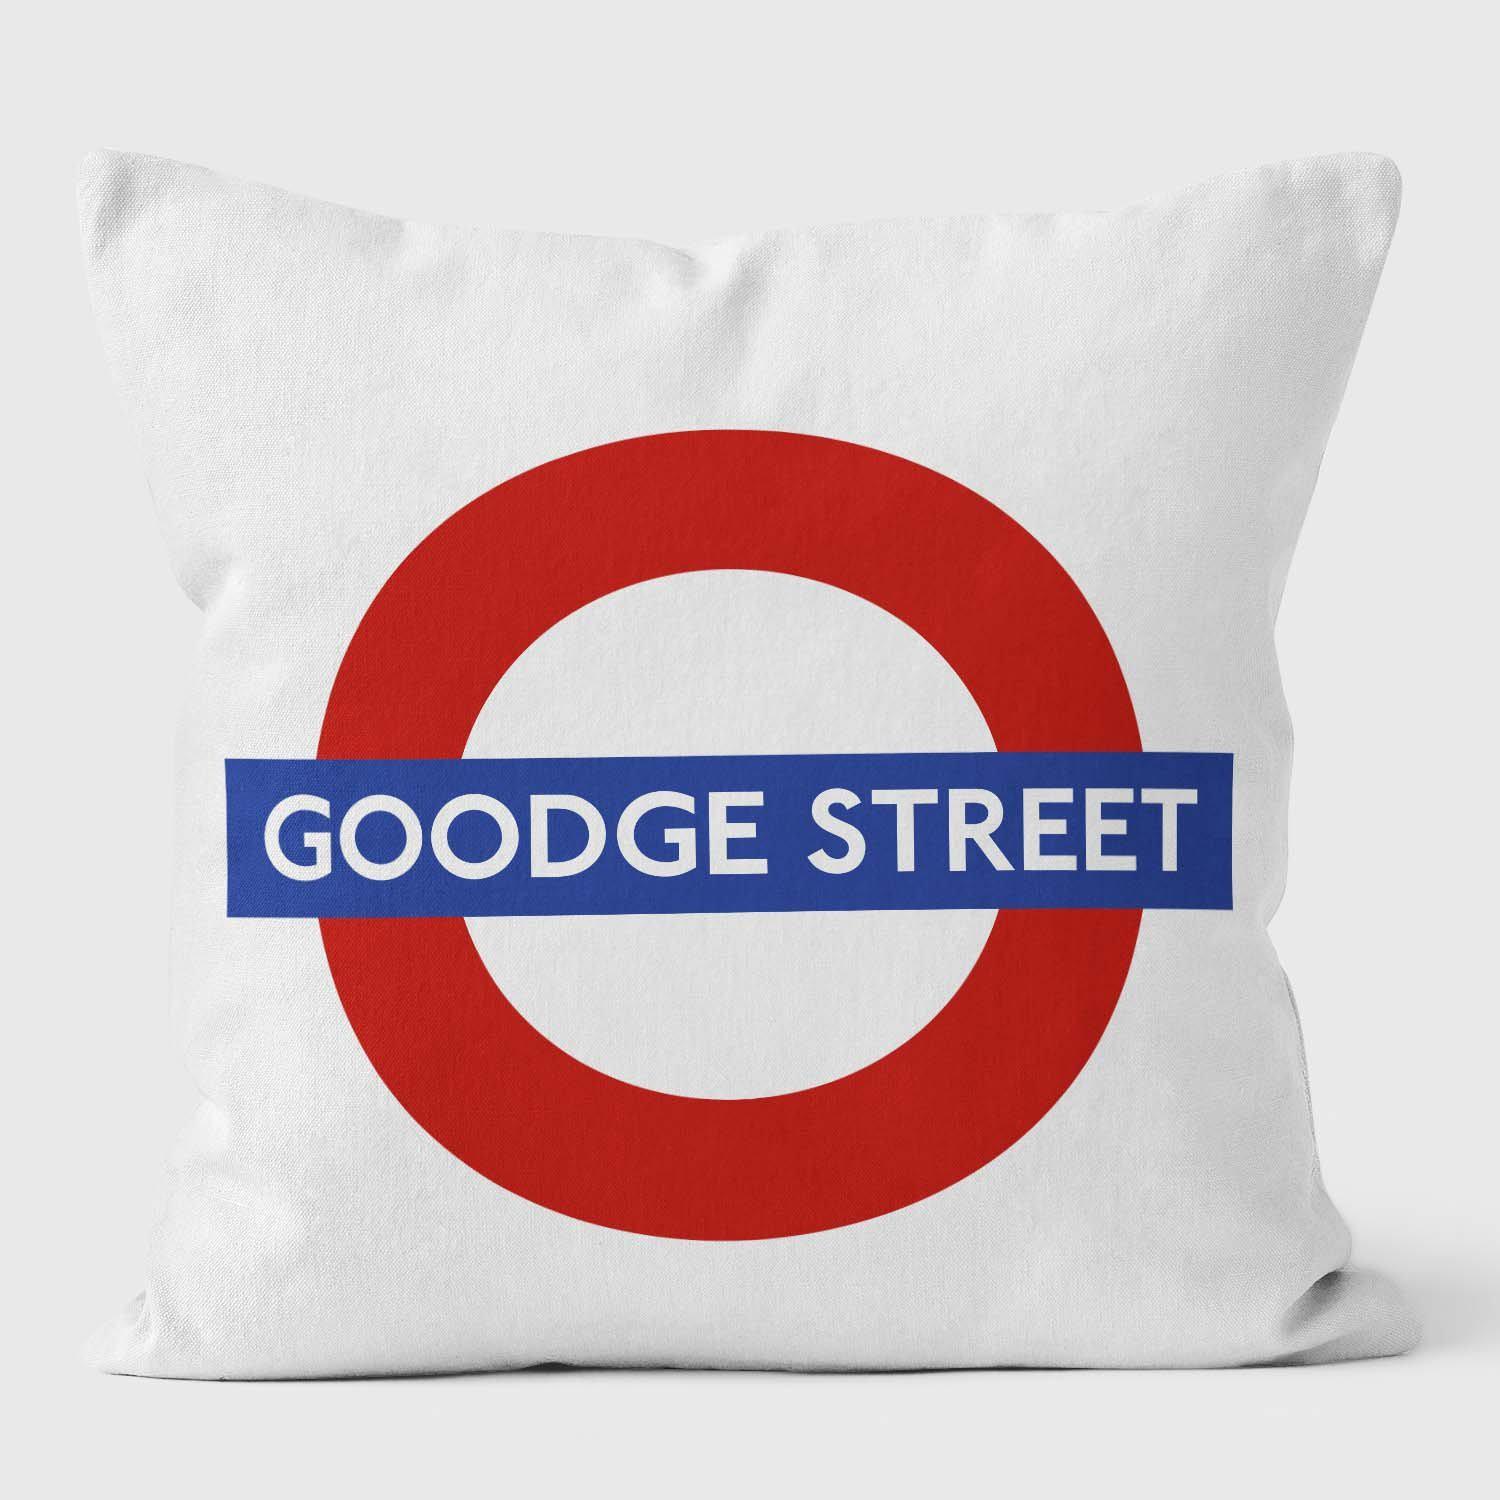 Goodge Street London Underground Tube Station Roundel Cushion - Handmade Cushions UK - WeLoveCushions